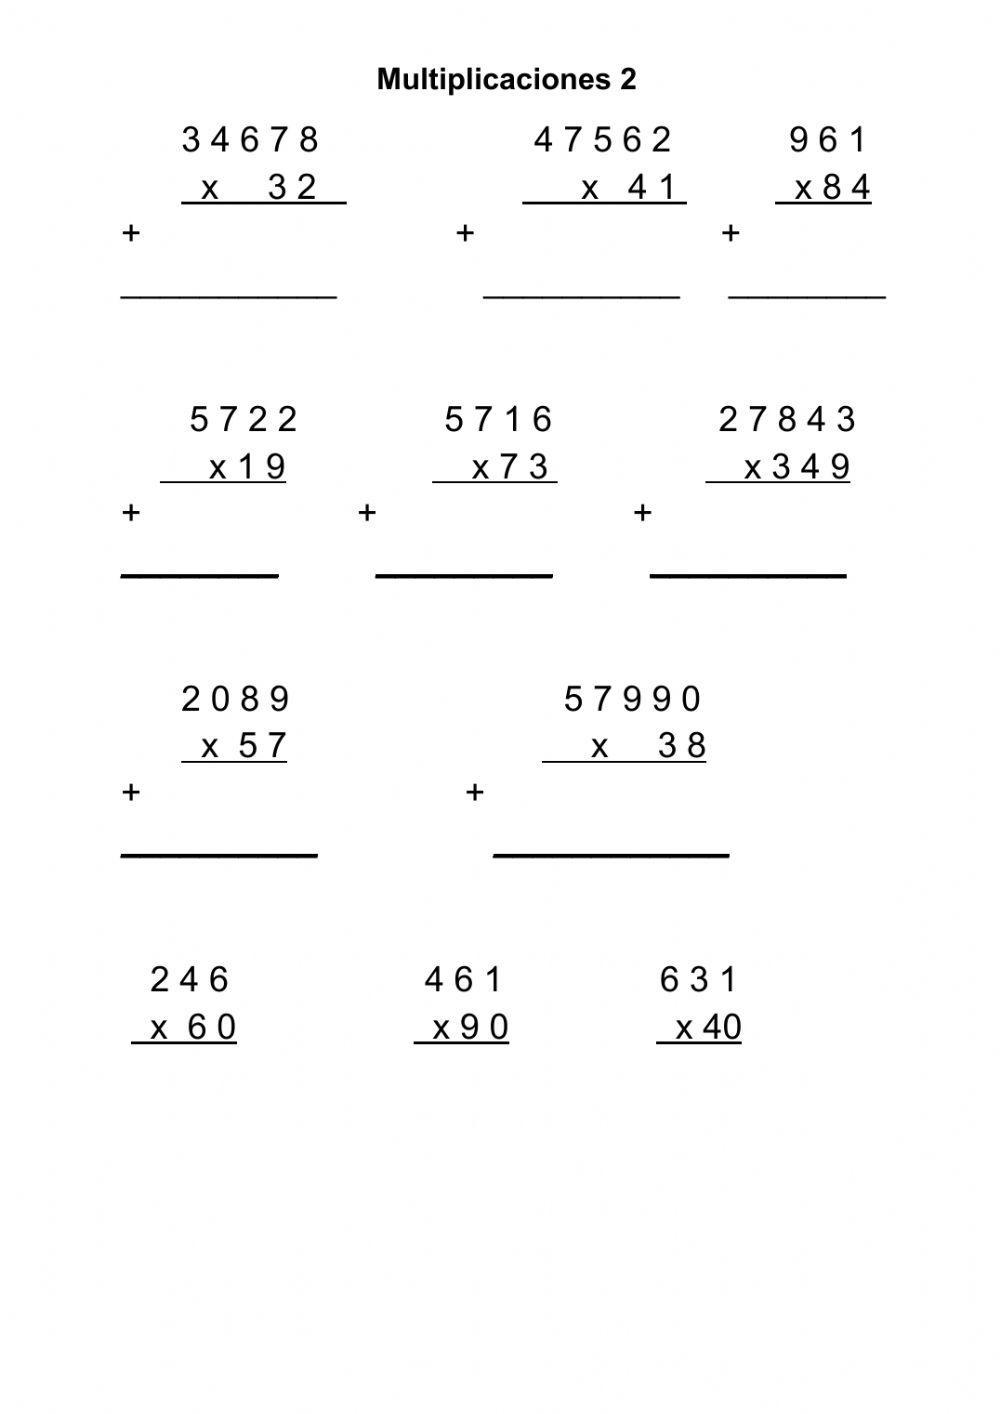 Multiplicaciones de dos cifras